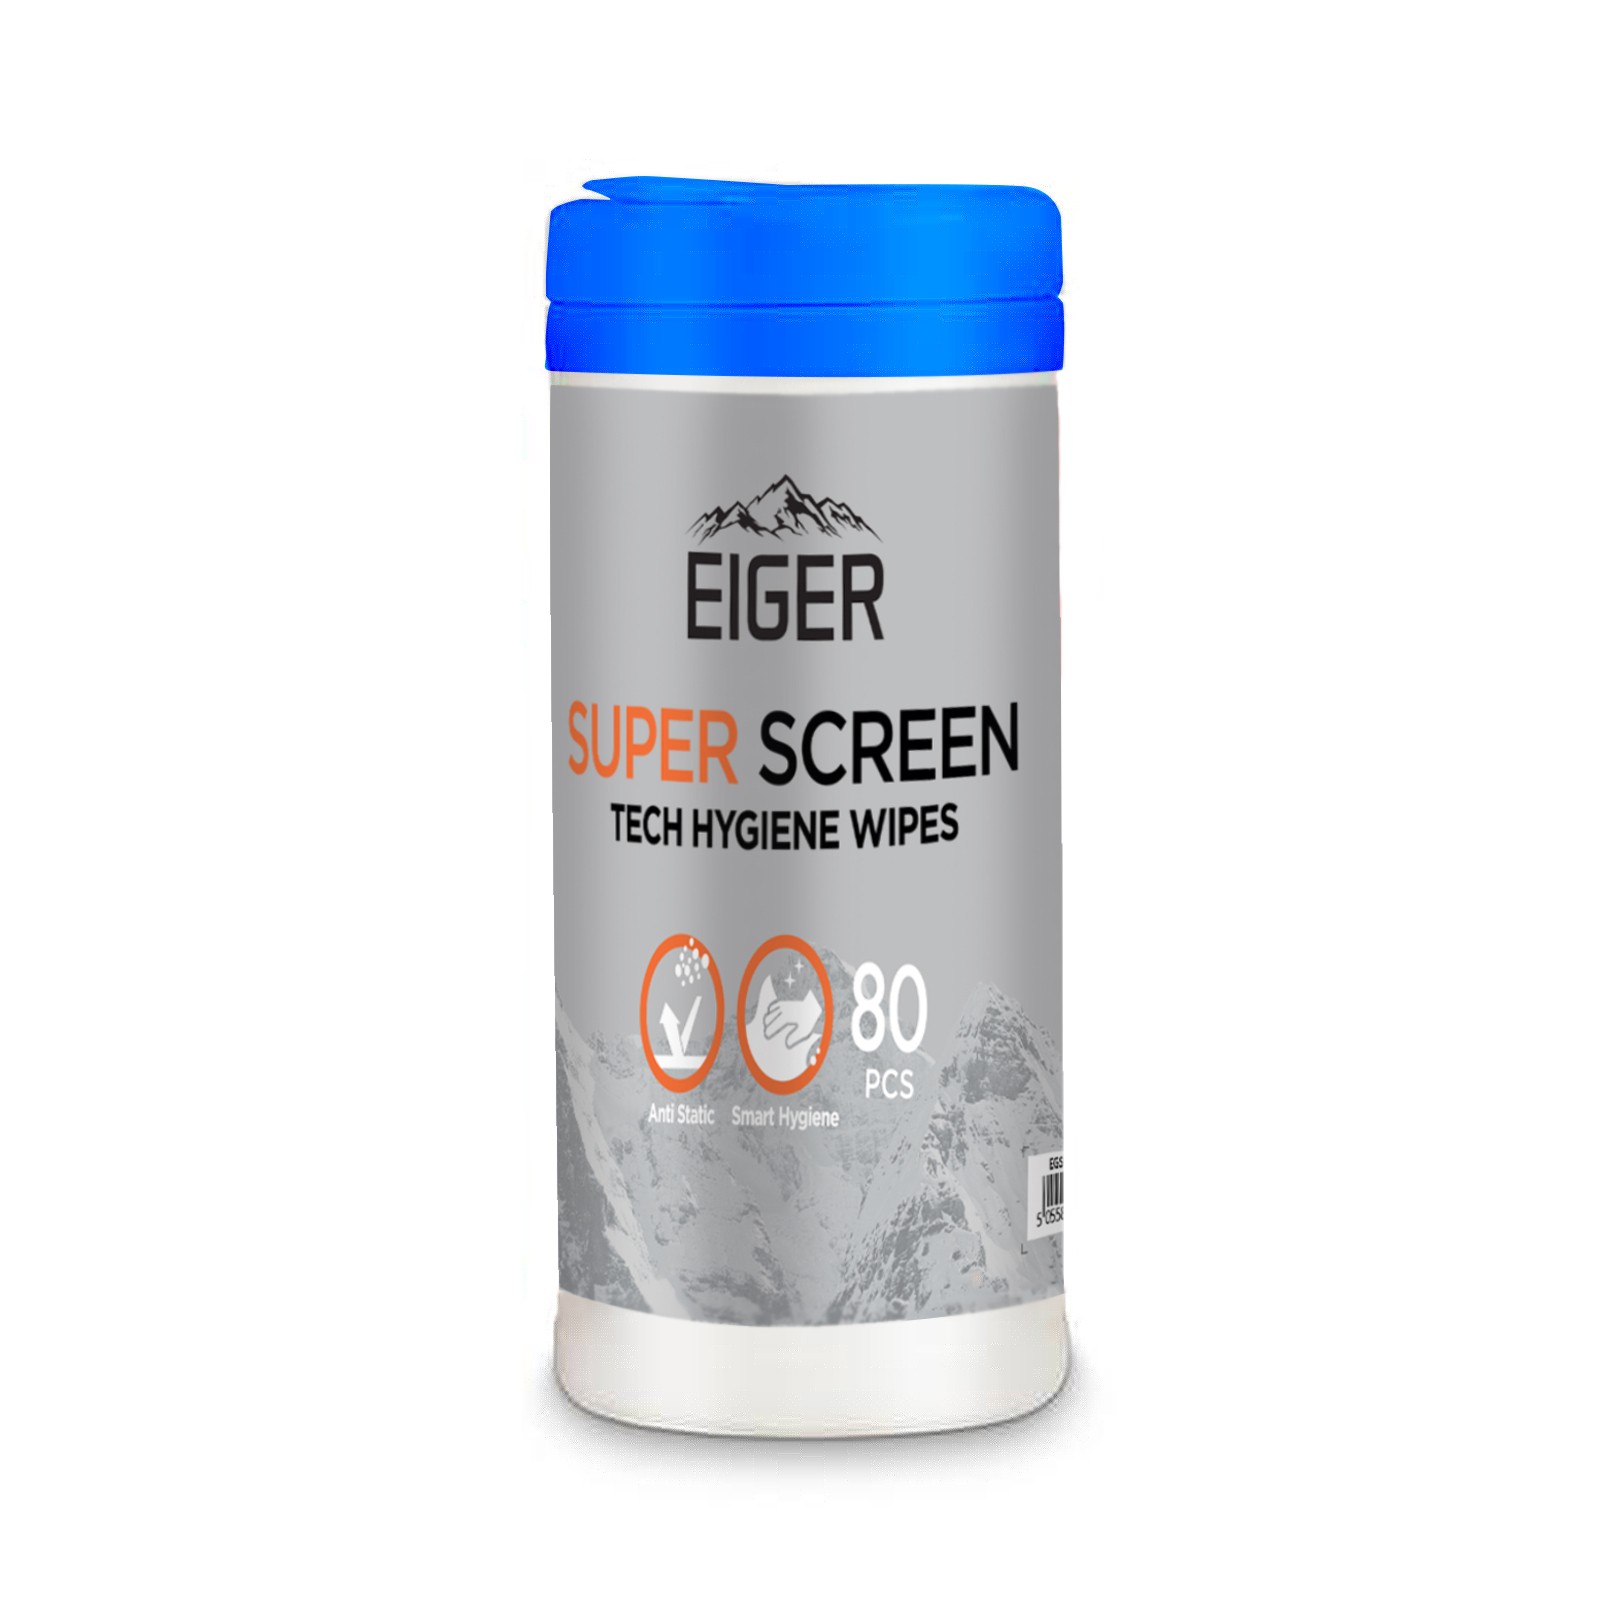 Eiger Super Screen Cleaning Wipes 80 Pack - 80 броя антибактериални кърпички за почистване на дисплей на смартфони, таблети, монитори и др.